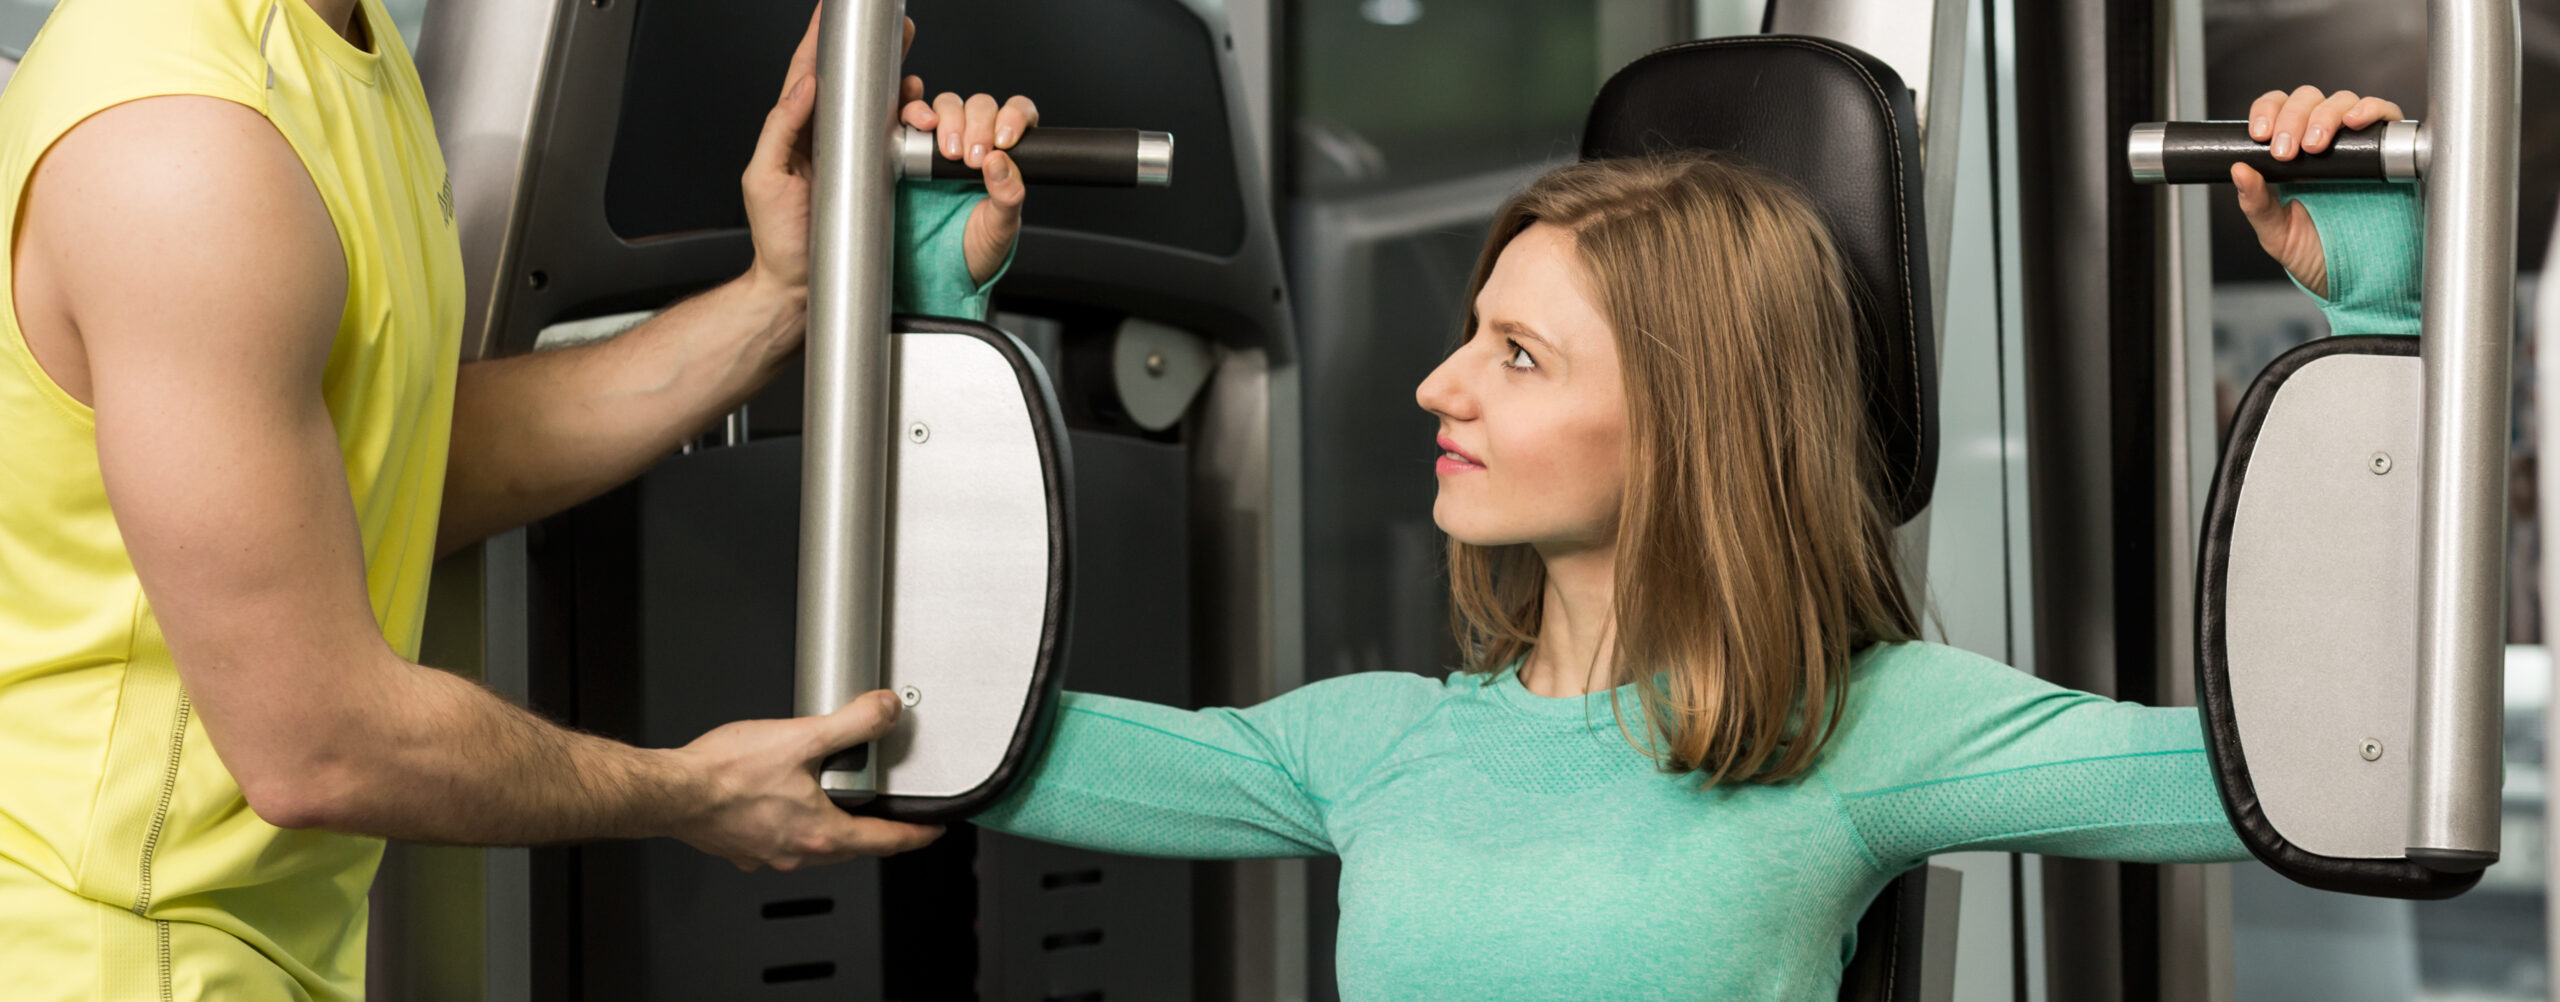 Personal Training e Tendências Fitness: Exercício para Saúde e Desempenho Esportivo